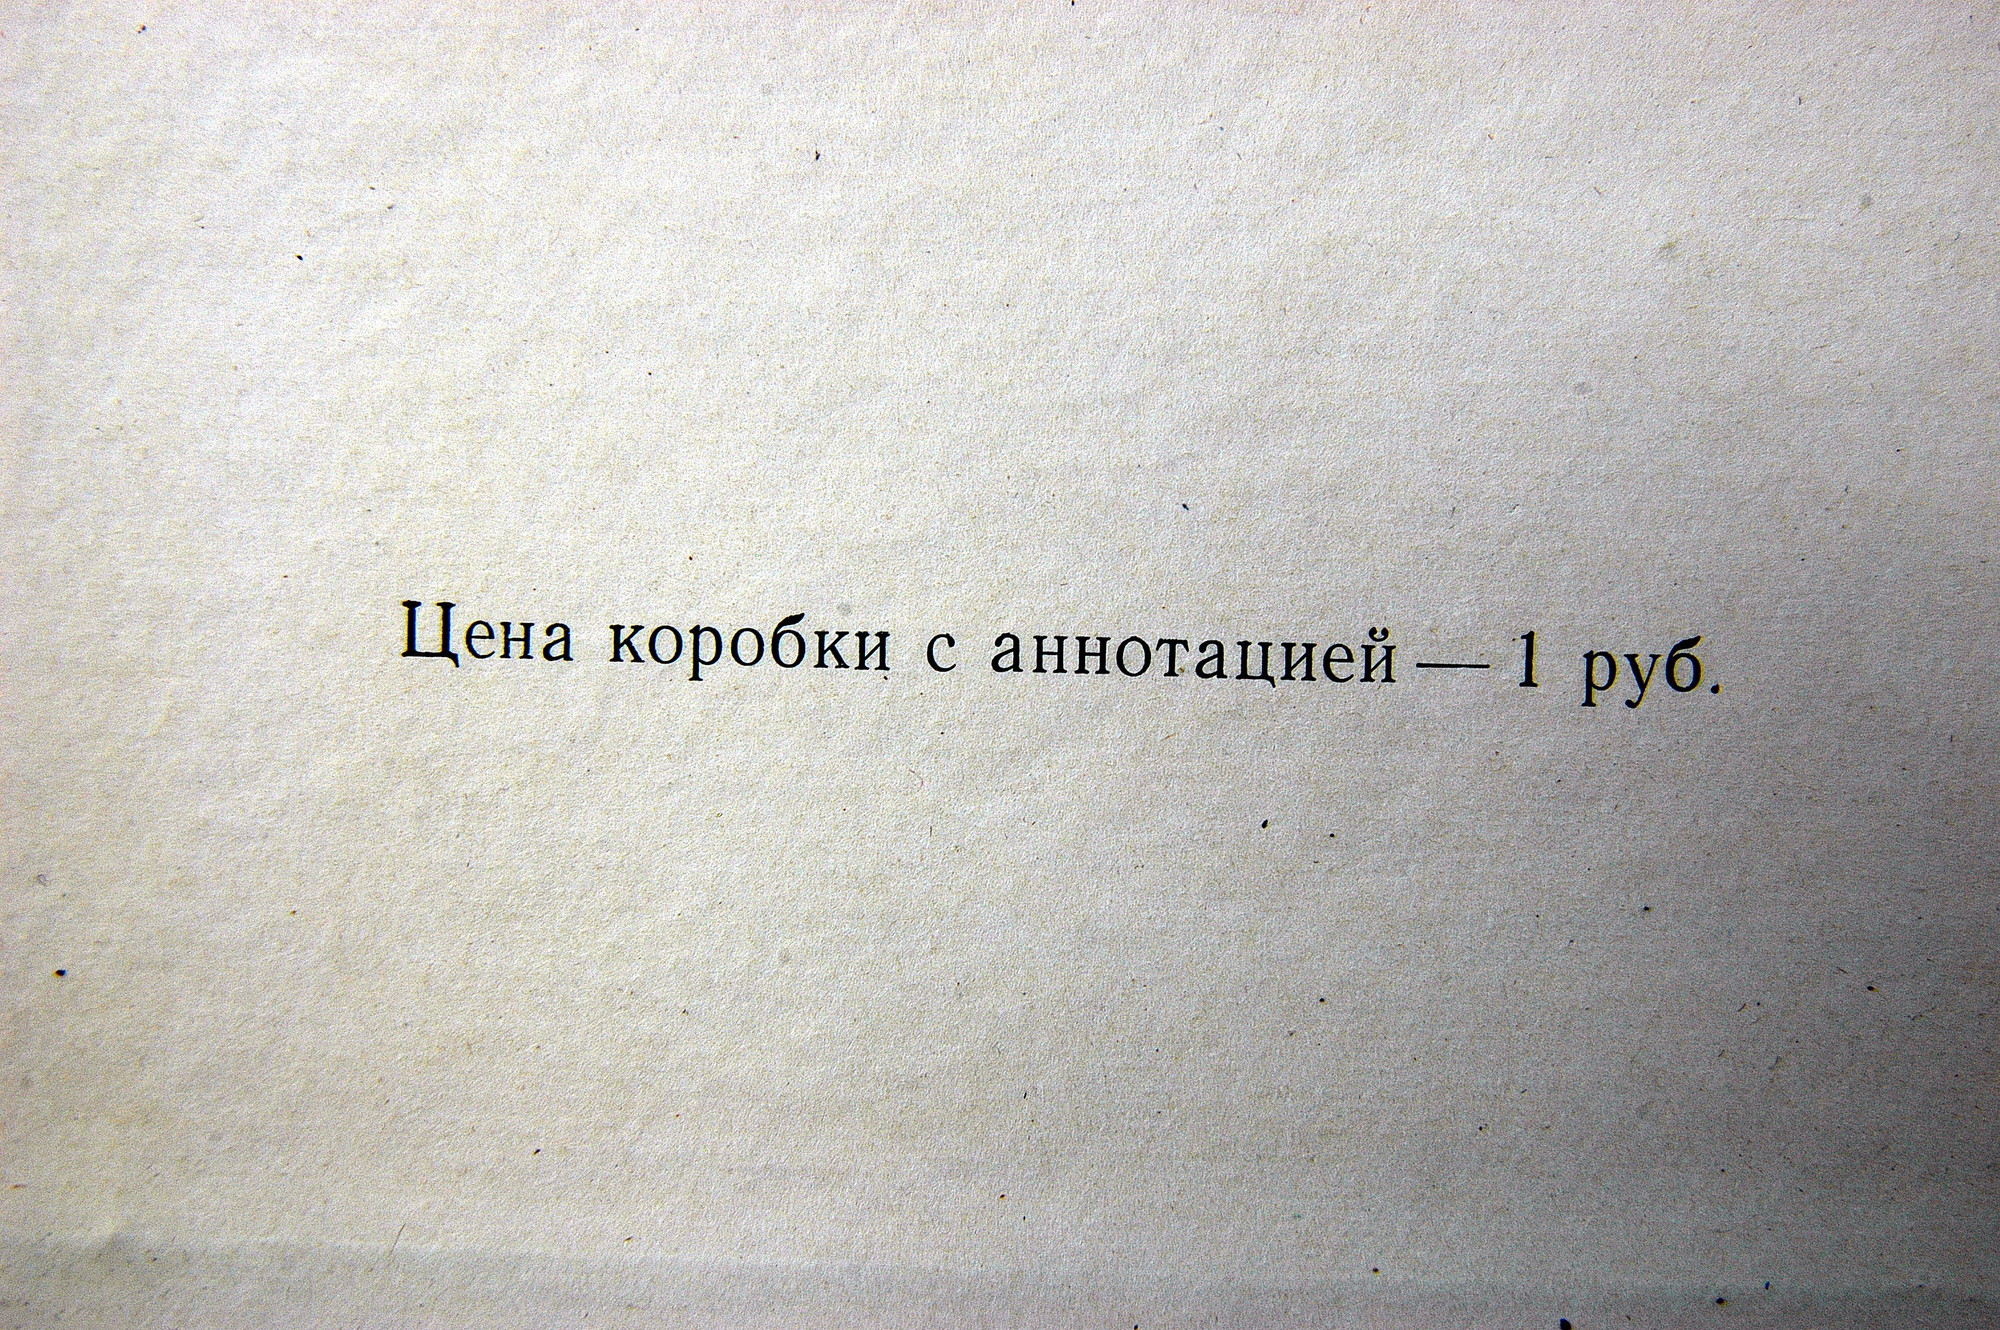 П.И. ЧАЙКОВСКИЙ (1840–1893): «Опричник», опера в 4 действиях (А. Орлов)